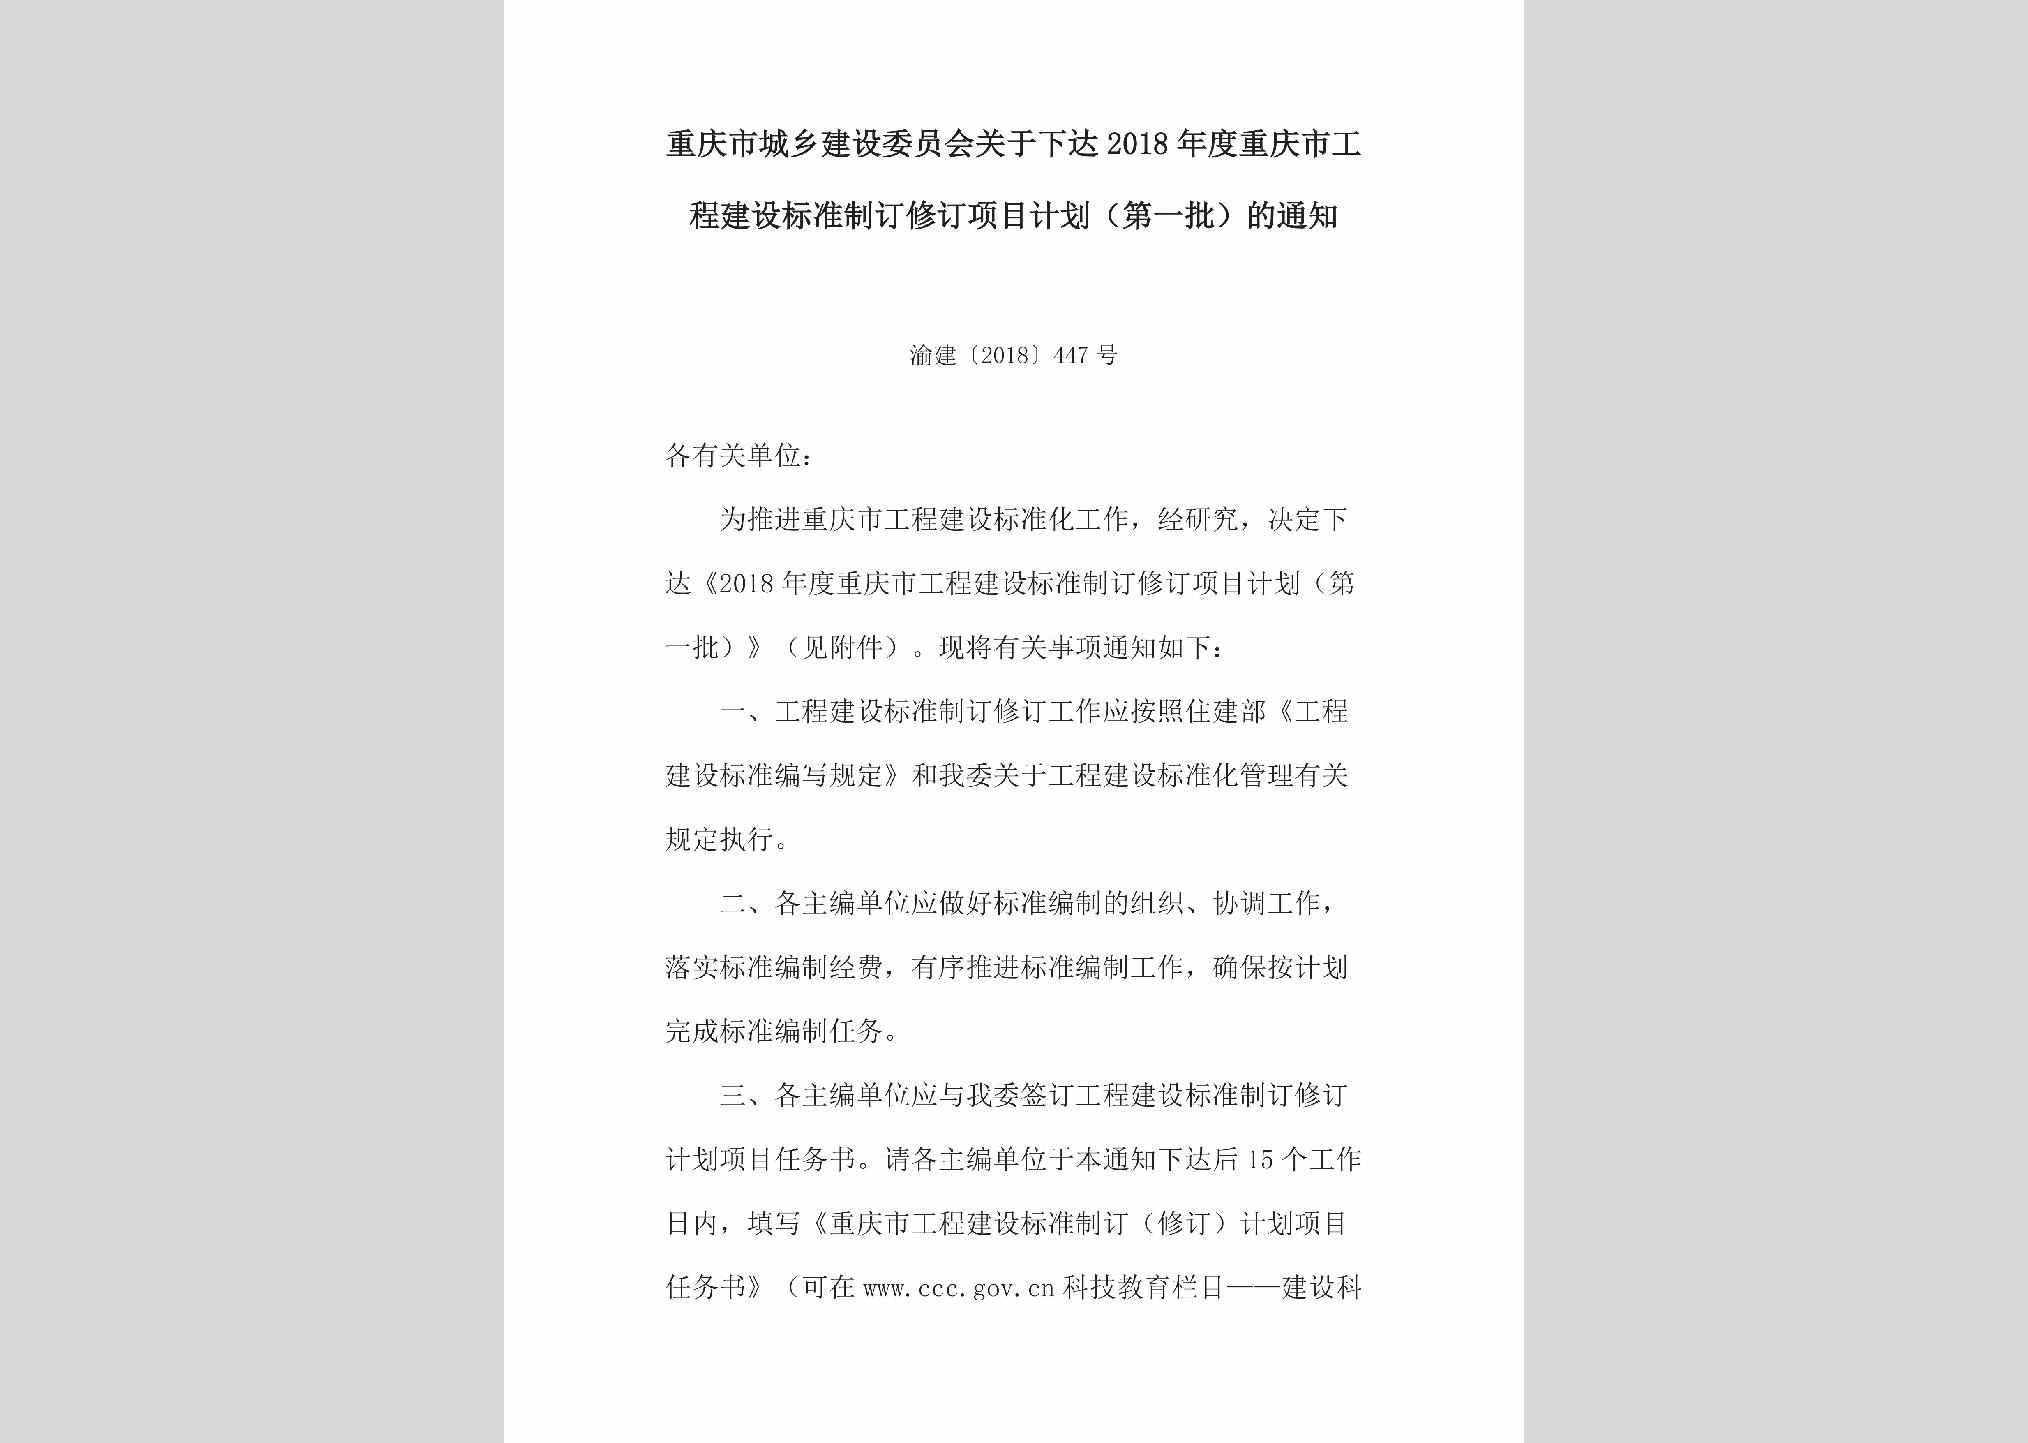 渝建[2018]447号：关于下达2018年度重庆市工程建设标准制订修订项目计划（第一批）的通知